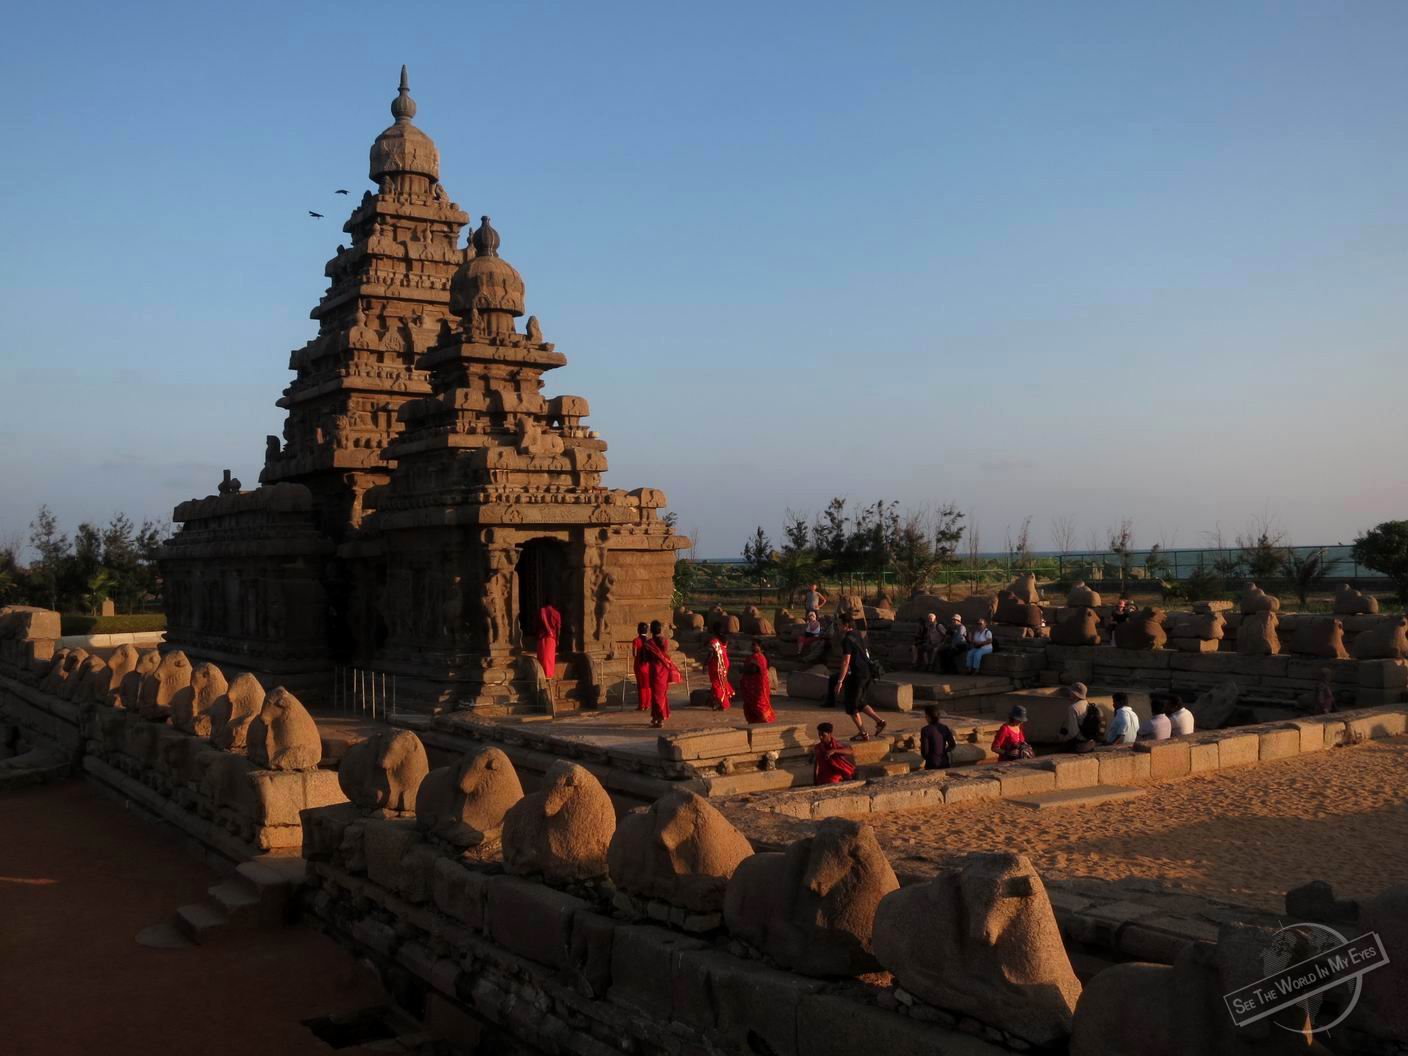 130122-Travel-Blog-903-1-UNESCO-Shore-Temple-in-Mamallapuram-India.jpg